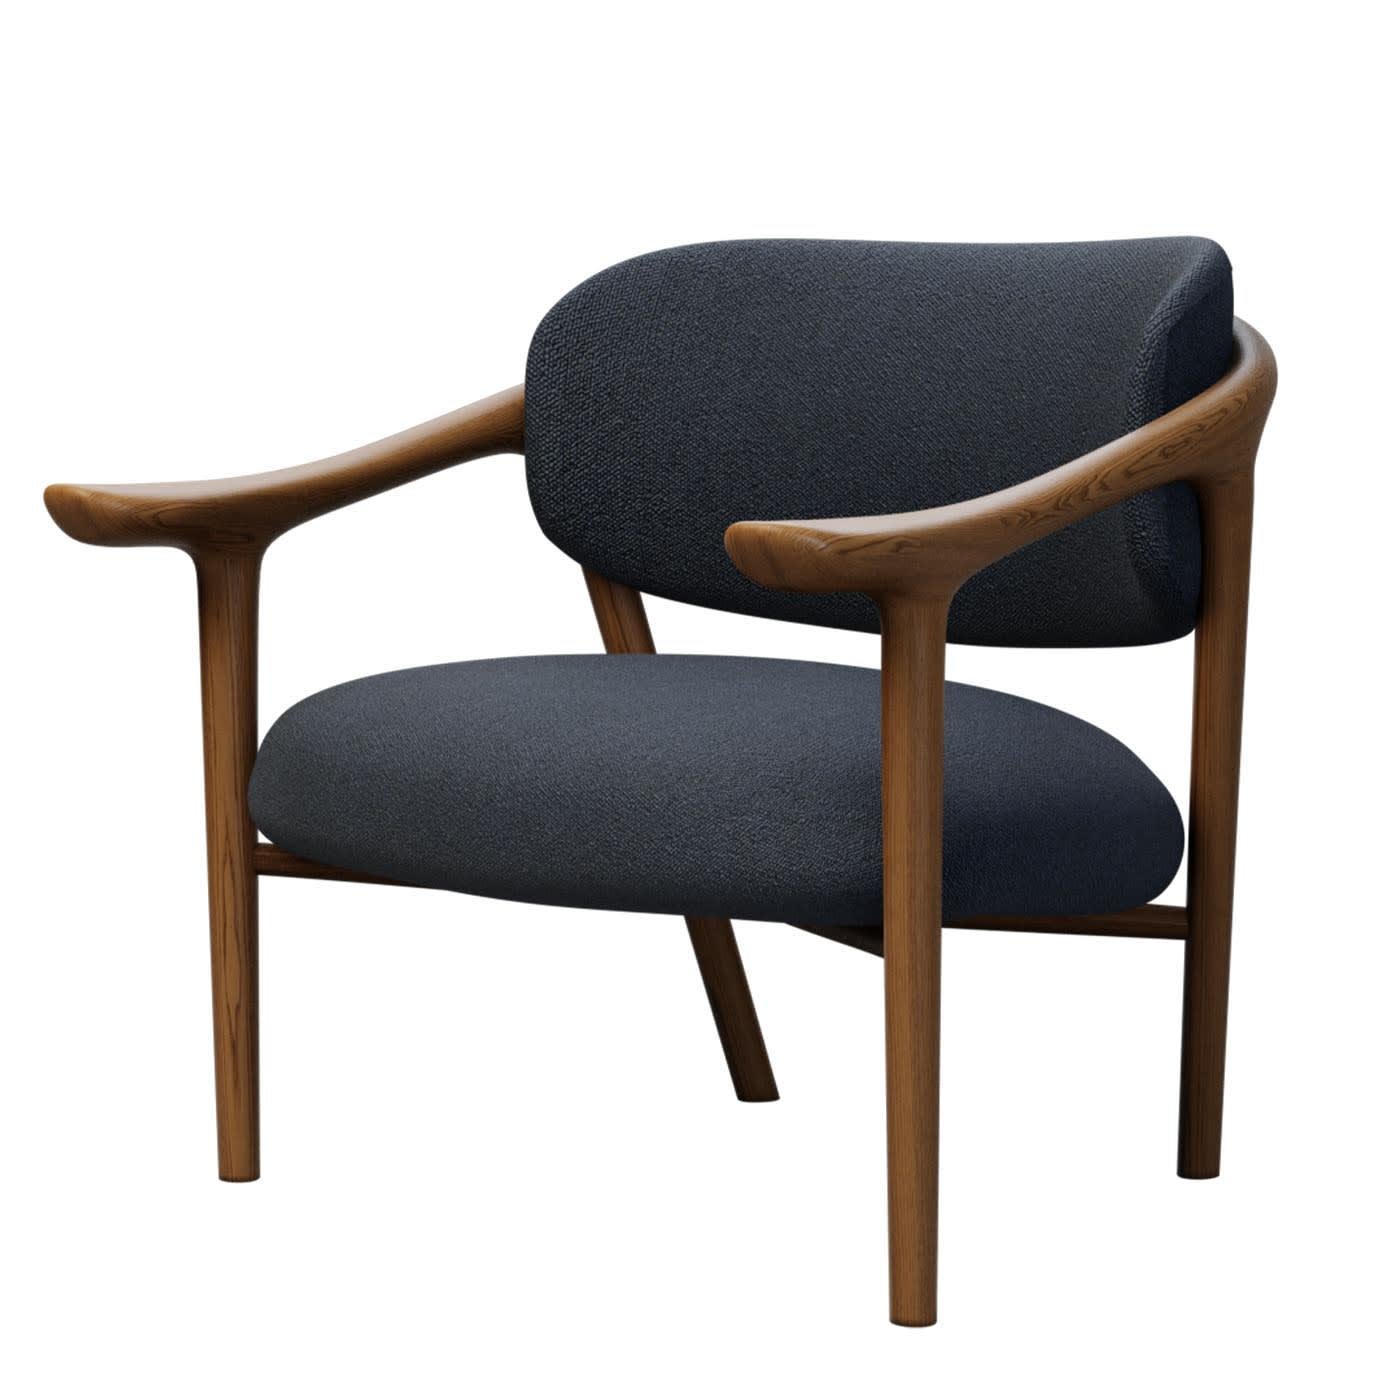 Elegant et épuré, ce fauteuil met en valeur un design moderne d'une valeur intemporelle. Fabriqué à la main en bois de frêne, il est doté d'une assise et d'un dossier doucement paddés, tous deux recouverts de tissu. Conçue par Libero Rutilo pour